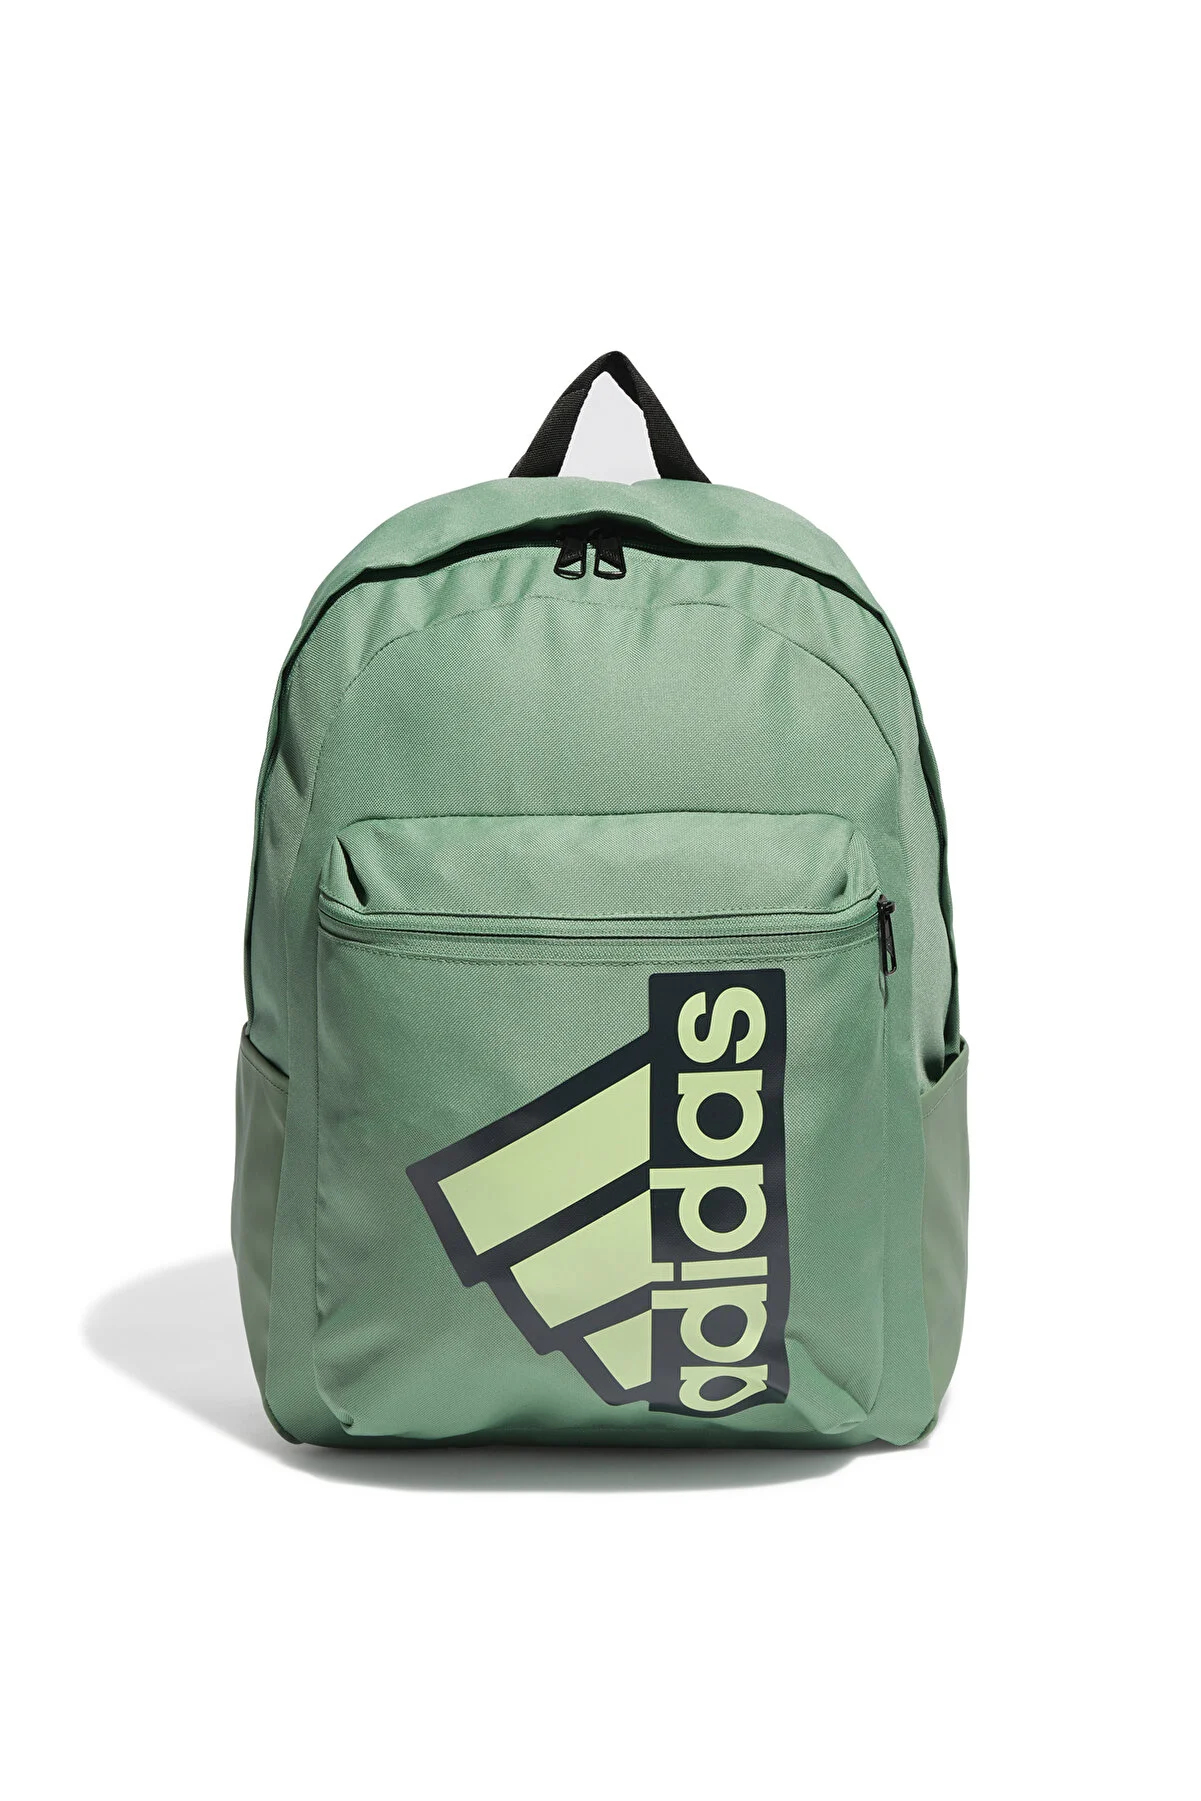 Рюкзак Adidas унисекс, IR9783, размер NS, зелёно-чёрный-AF4K